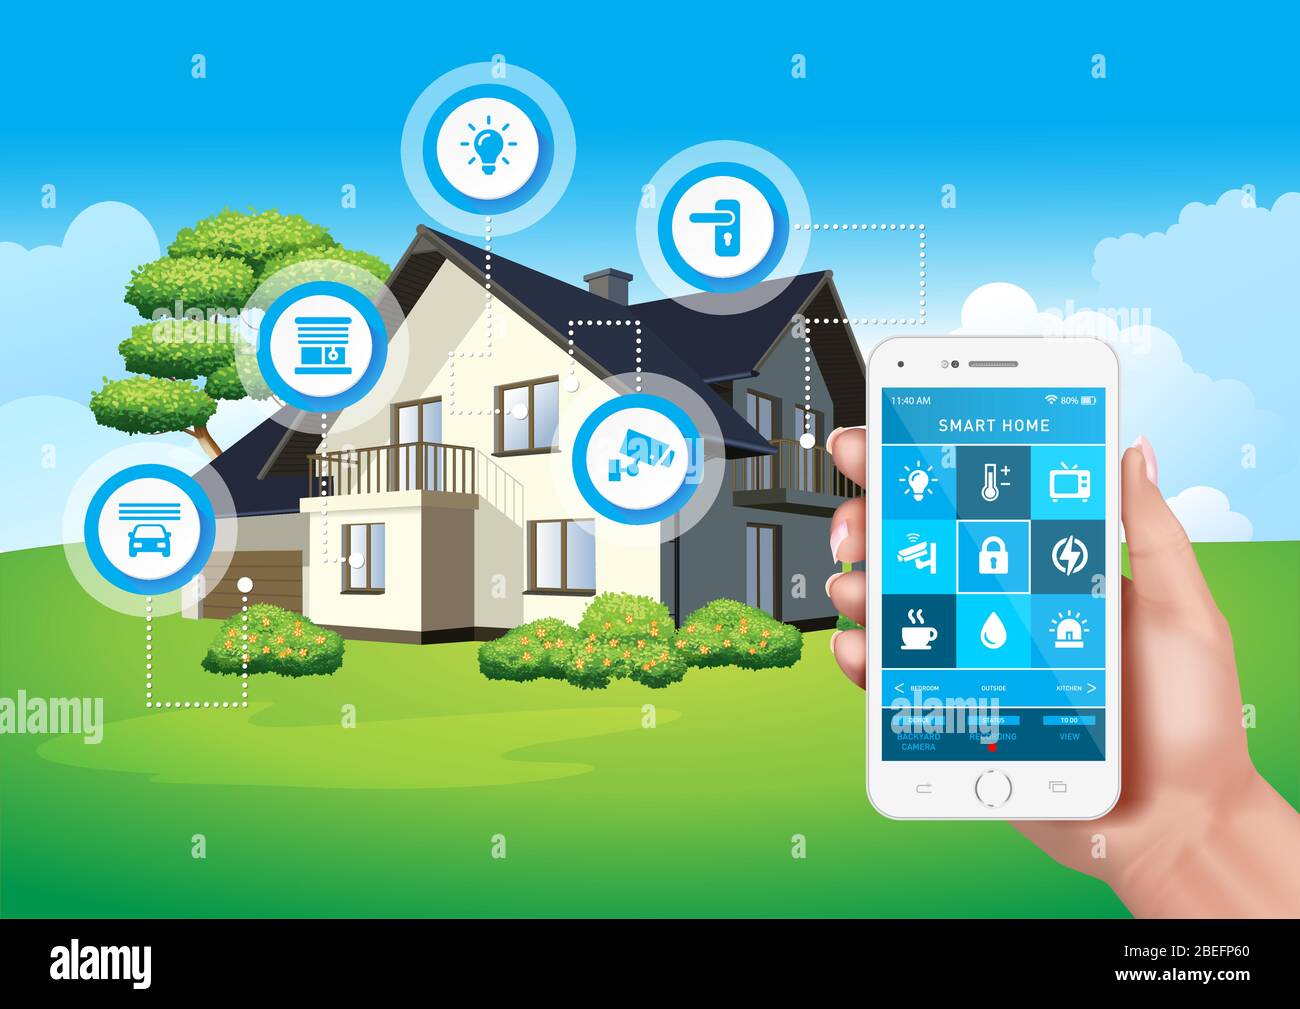 Diseño vectorial que representa un hogar inteligente moderno controlado por una aplicación móvil en un smartphone. Ilustración del Vector